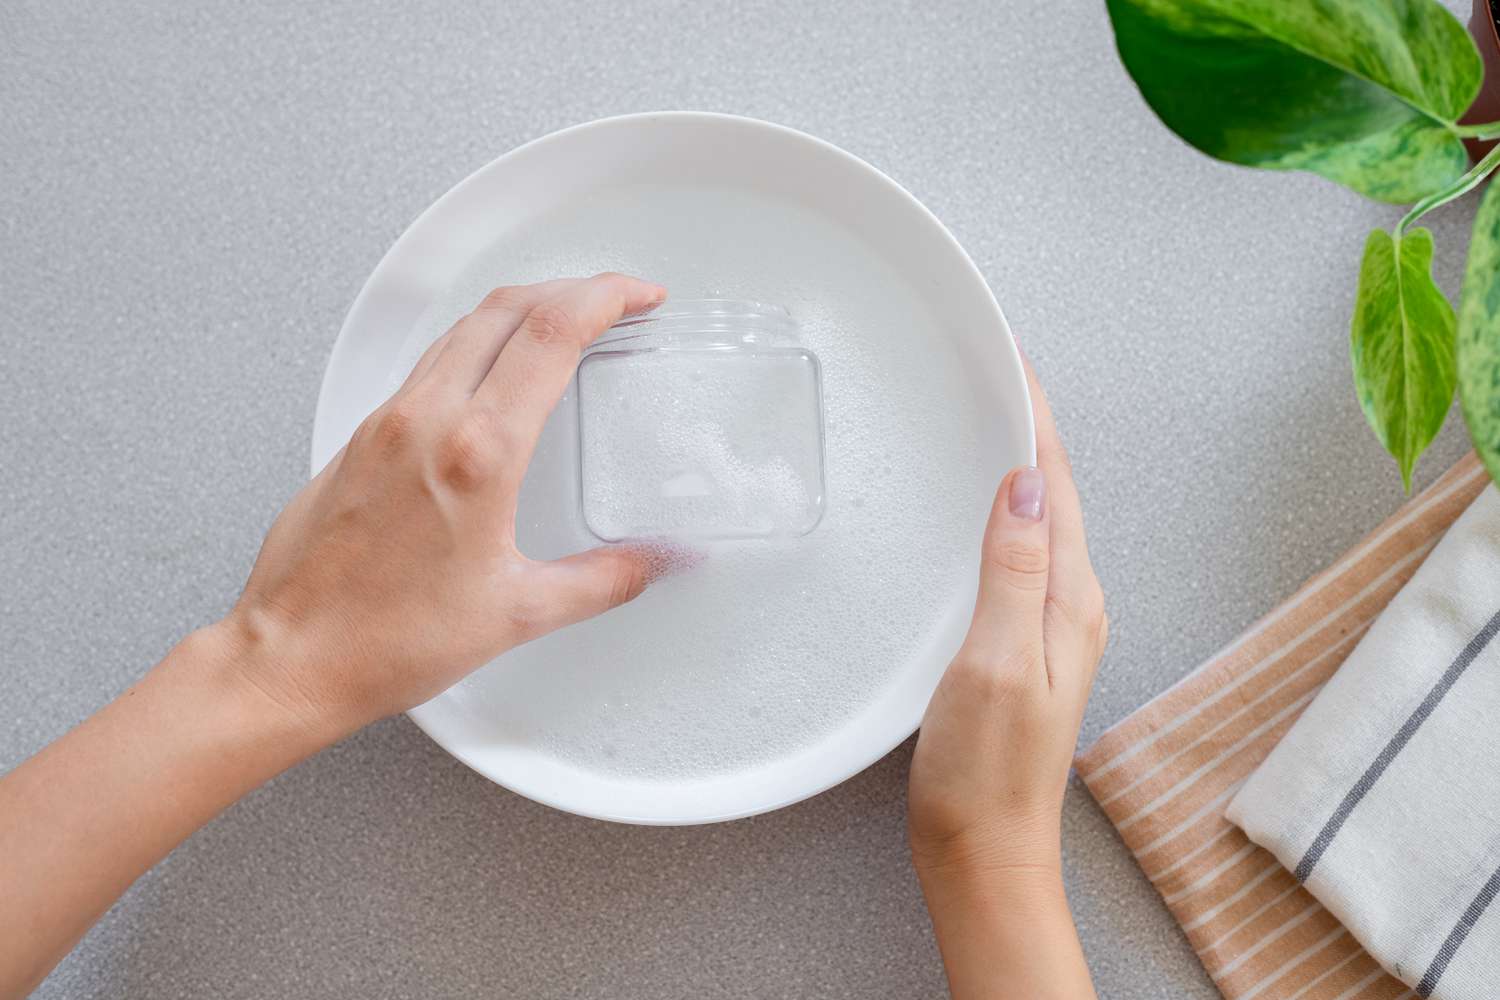 Glasbehälter in weiße Schüssel mit Seifenwasser getaucht, um Aufkleberrückstände zu entfernen